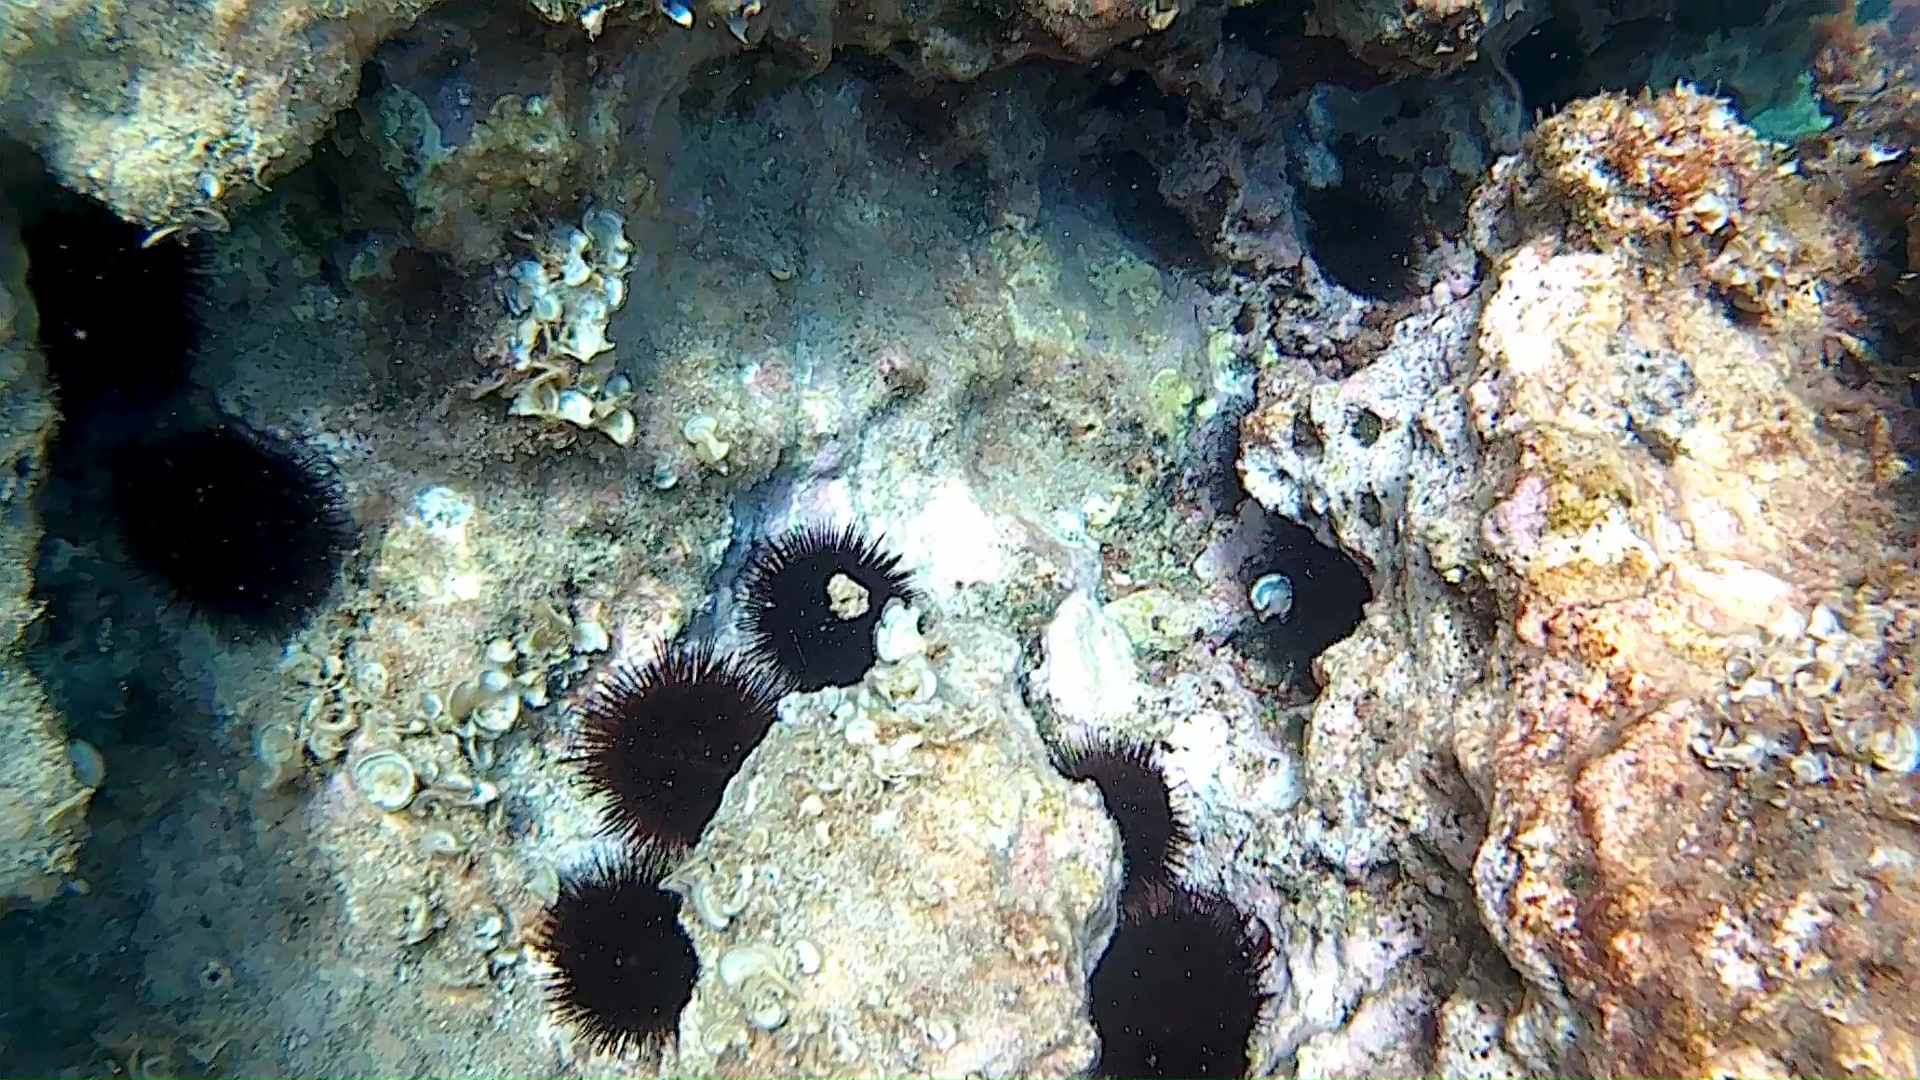 Paracentrotus lividus - Riccio di Mare - Sea Urchin - intotheblue.it